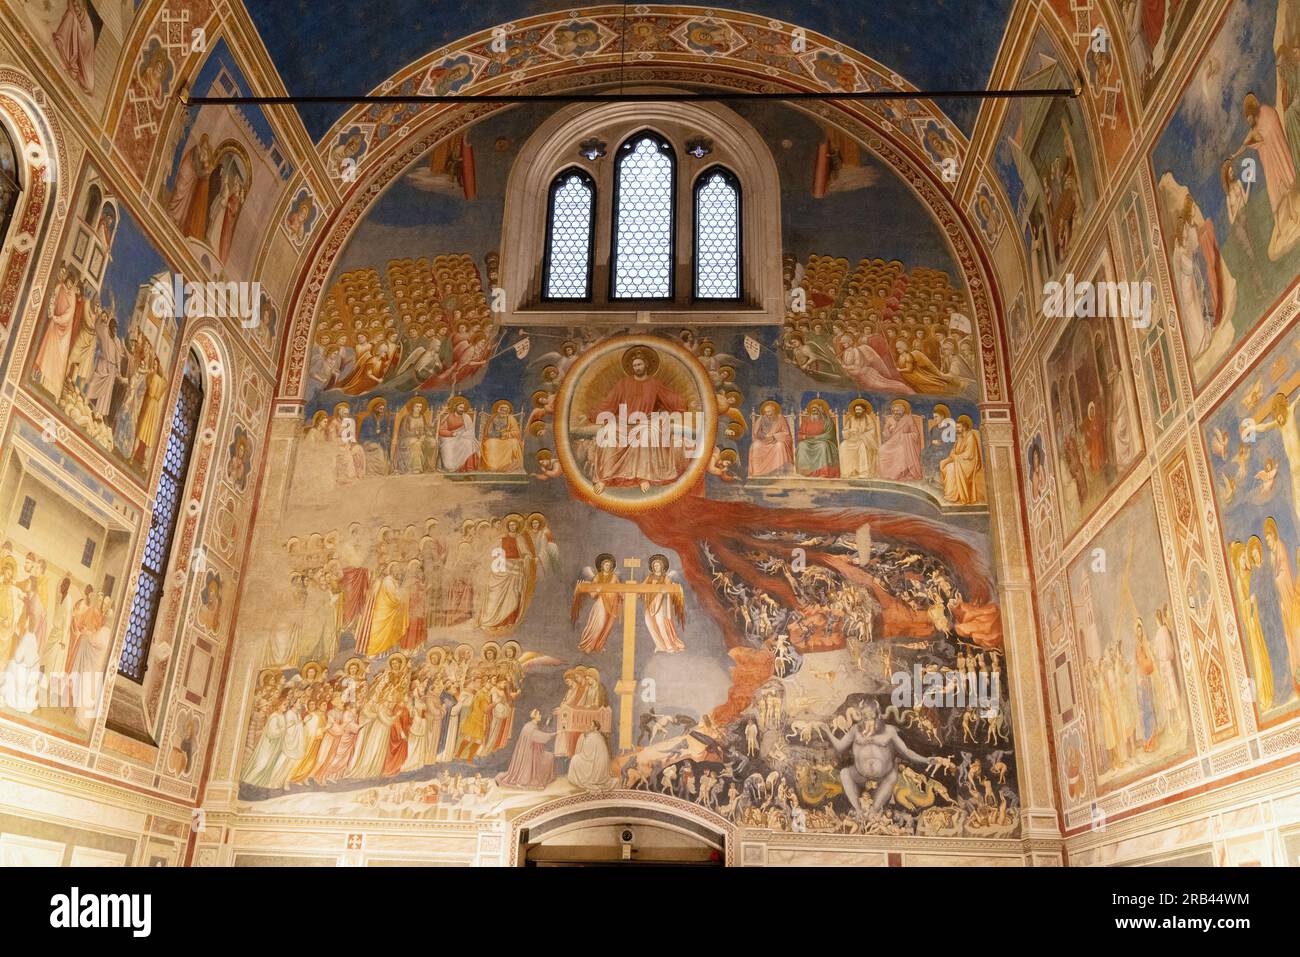 Fresques de Giottos, à l'intérieur de la chapelle Scrovegni, Padoue - peinture de la Renaissance italienne du 14e siècle - ici 'le jugement dernier' ; Padoue Italie Europe Banque D'Images